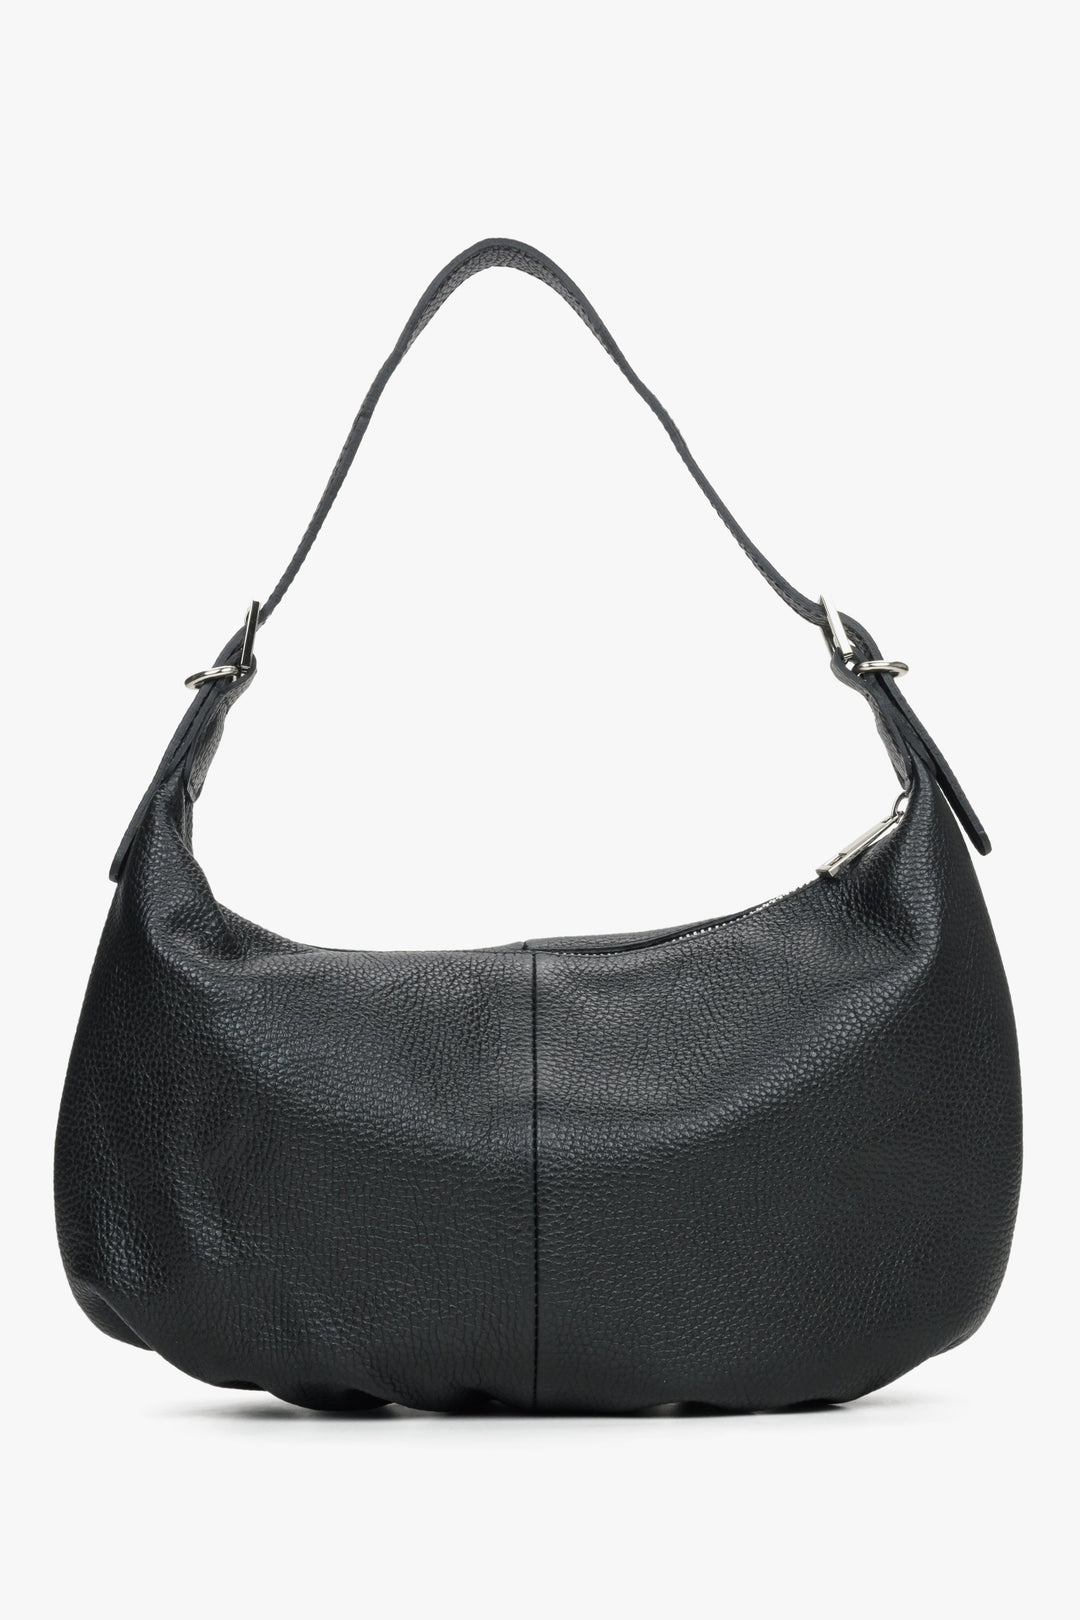 Black leather baguette bag by Estro.